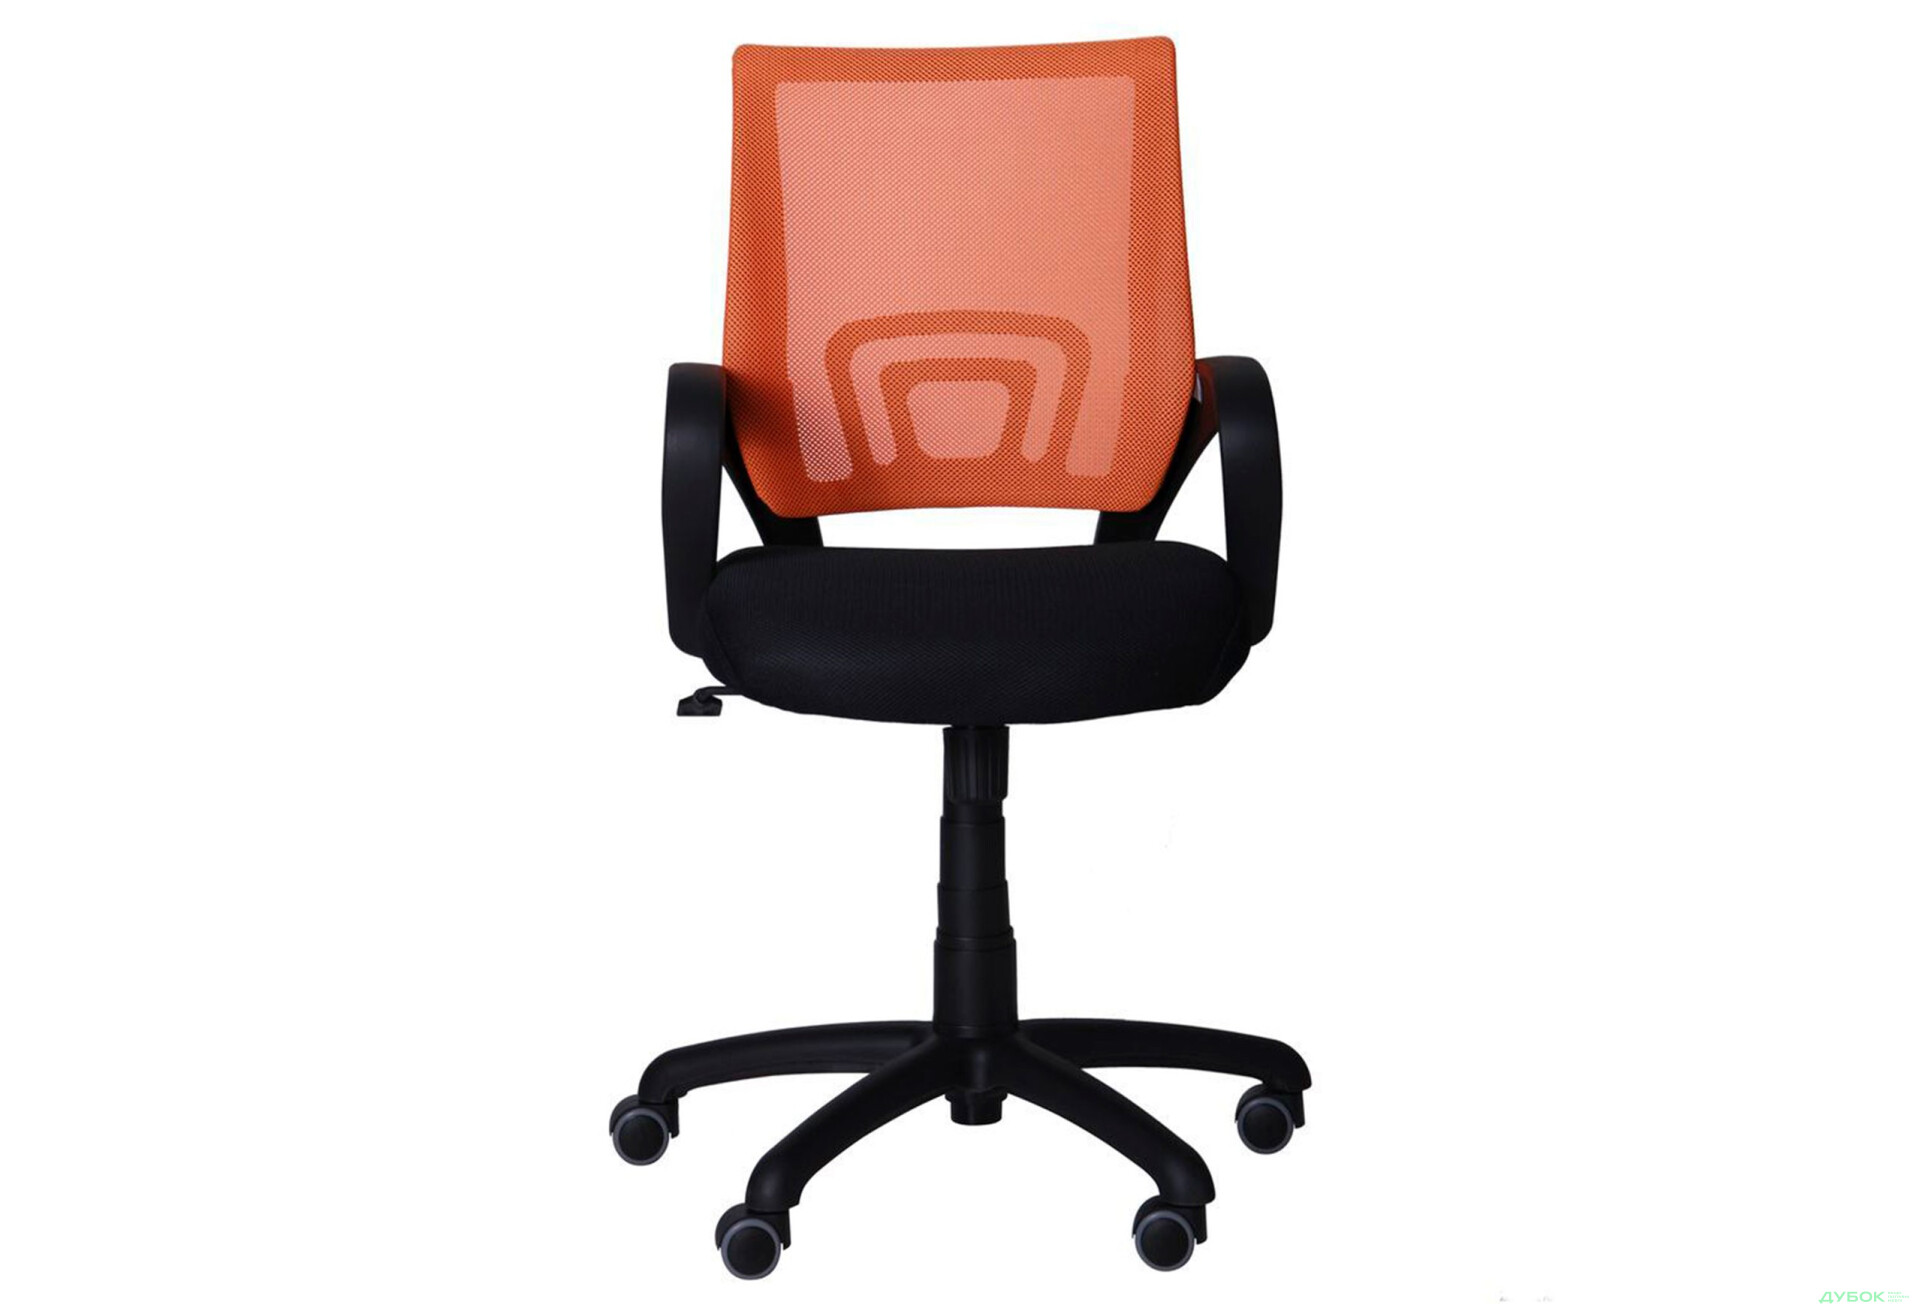 Фото 3 - Крісло Веб Tilt, сидіння сітка чорна/спинка сітка помаранчева, арт.117026 AMF